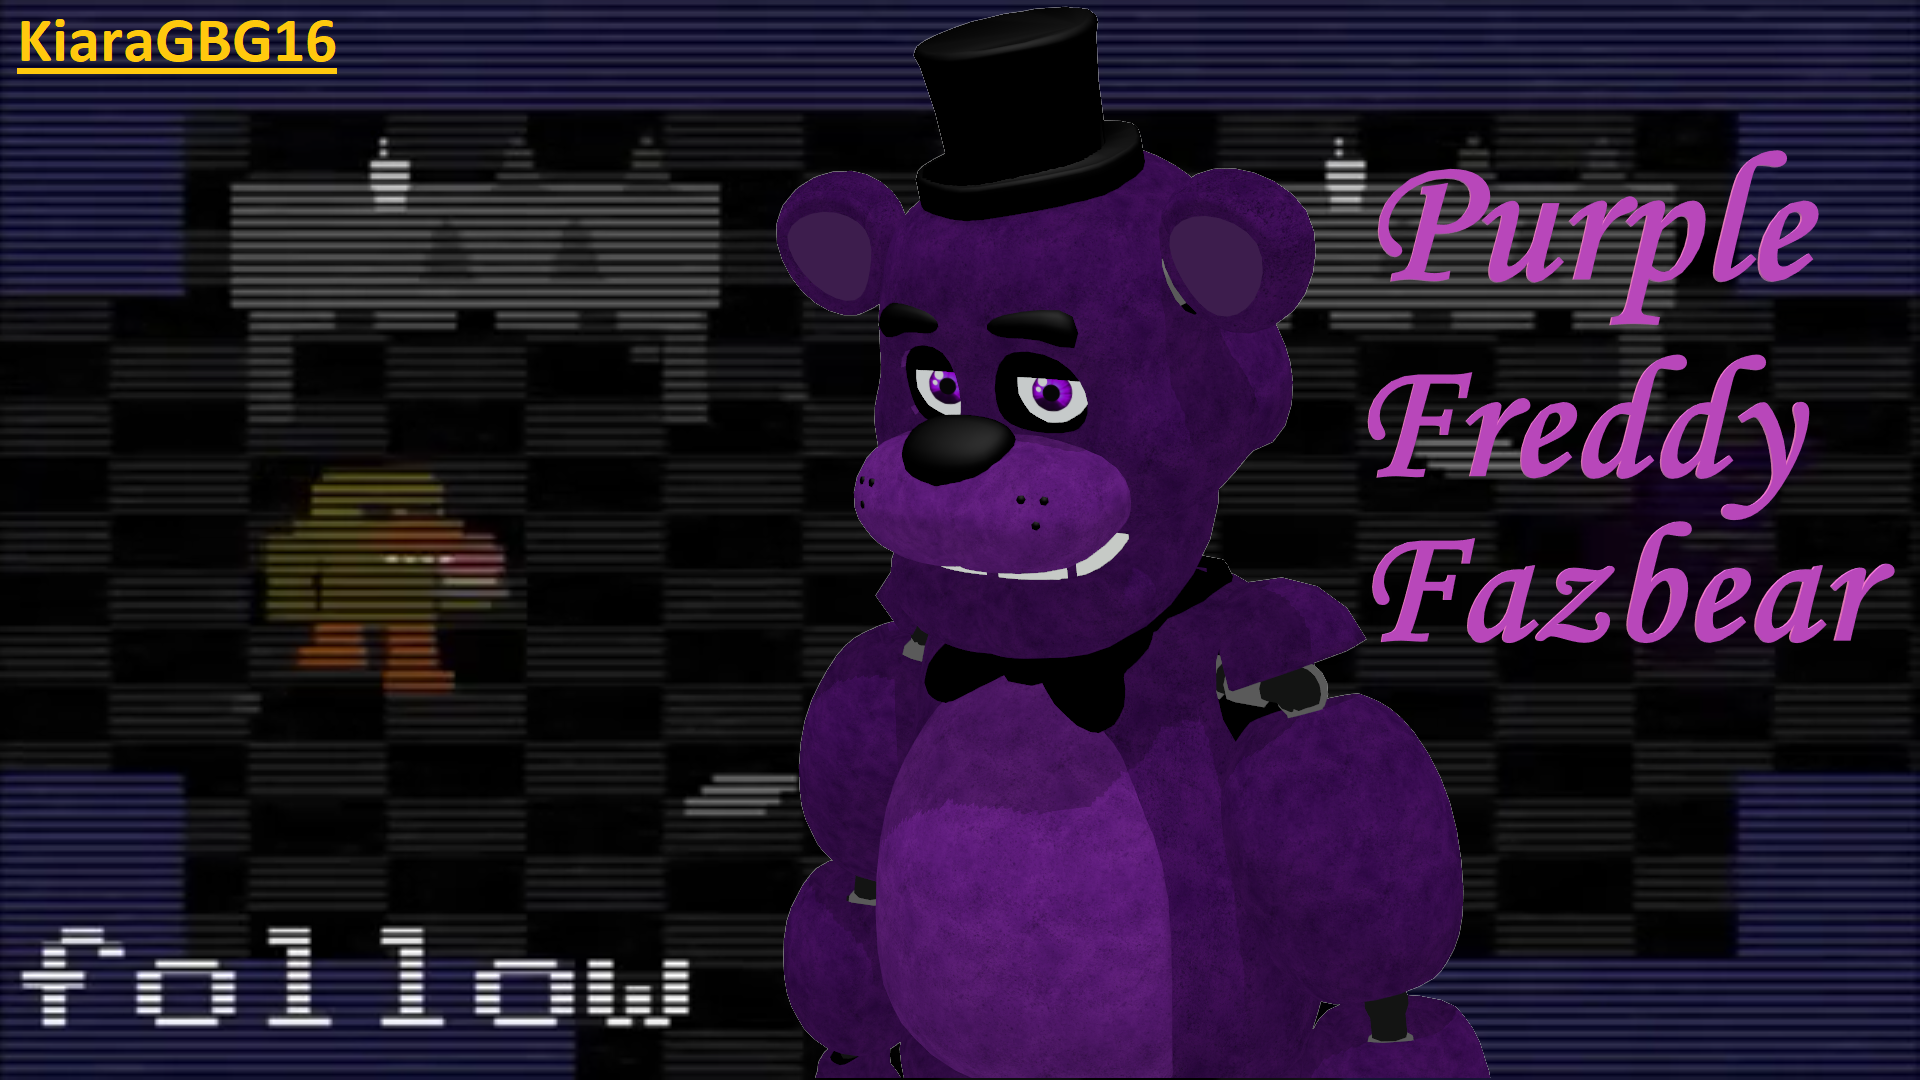 Fnaf 3 Shadow Freddy(Edit) by bearbro123 on DeviantArt